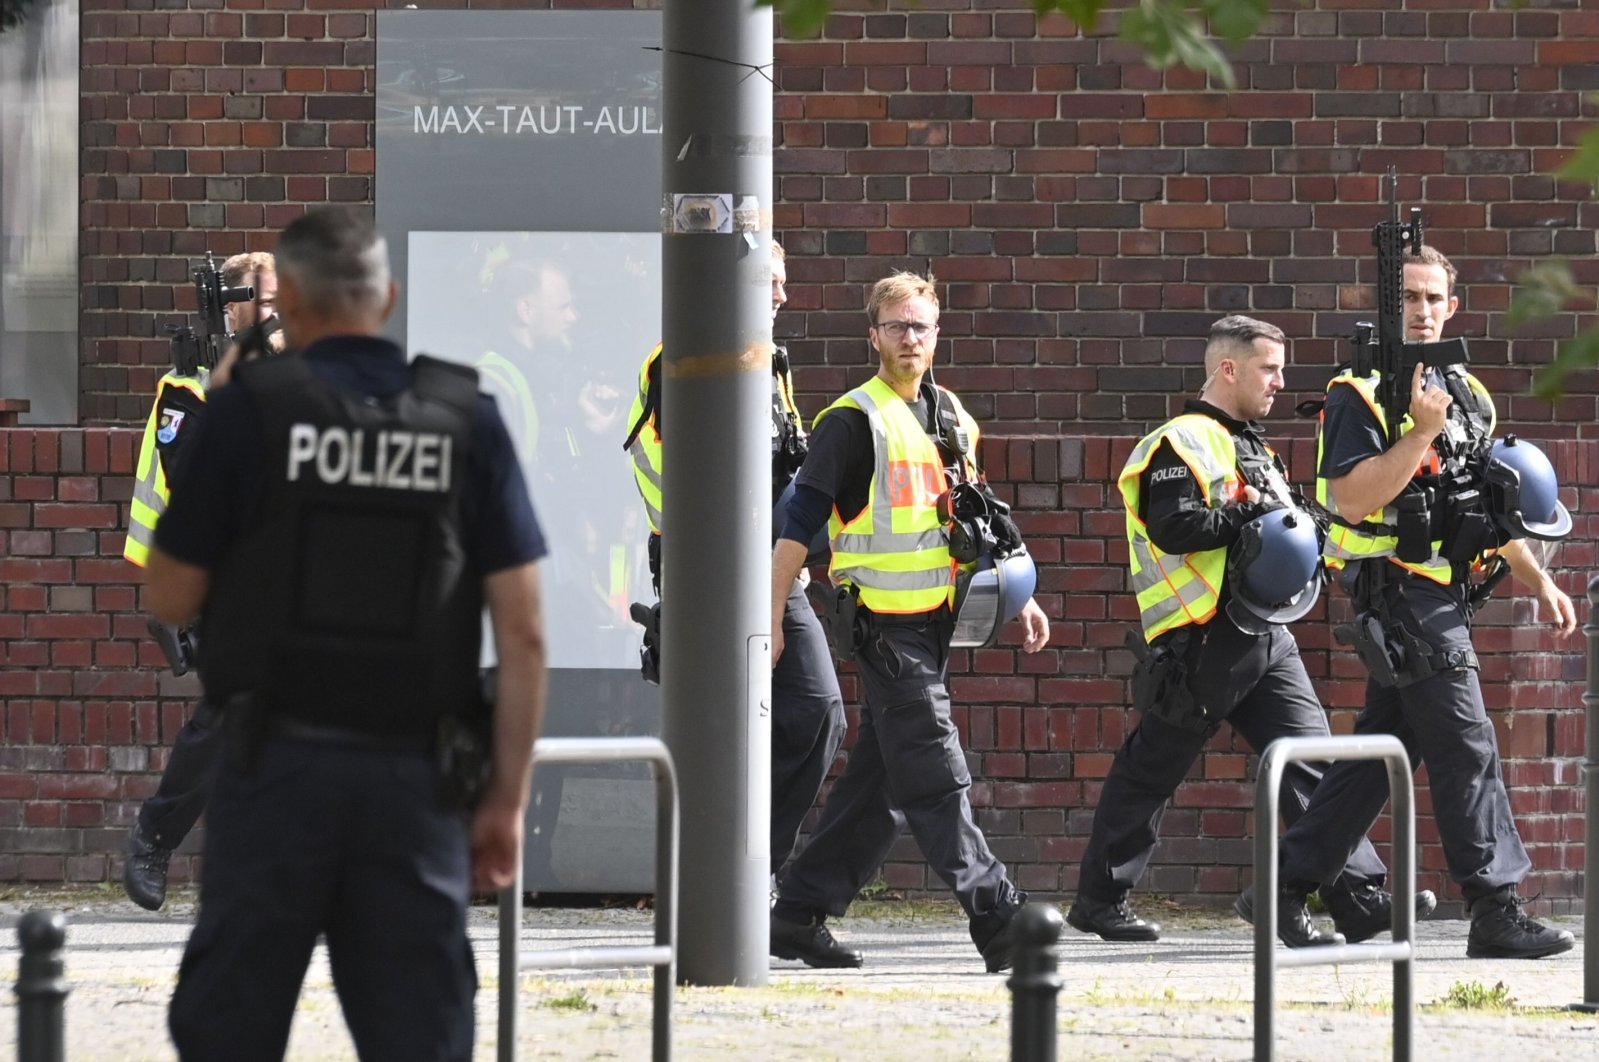 German armed policemen walk past a school in Berlin's Rummelsburg district, Germany, Aug. 28, 2020. (AFP Photo)